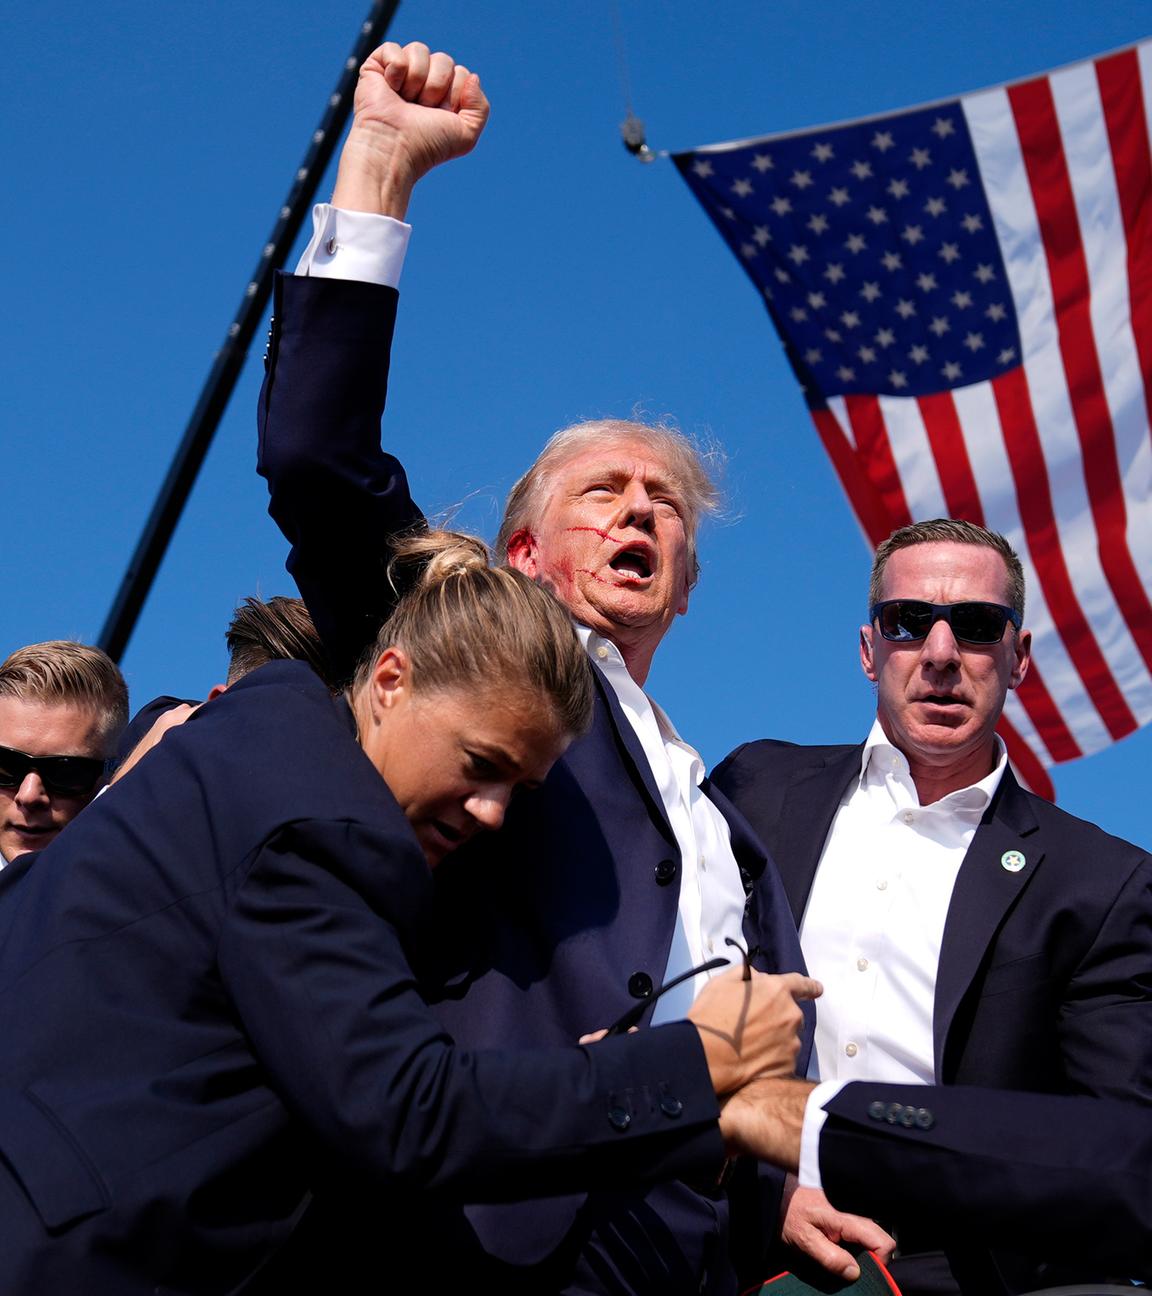 Donald Trump erhebt die Faust vor einer US-Flagge